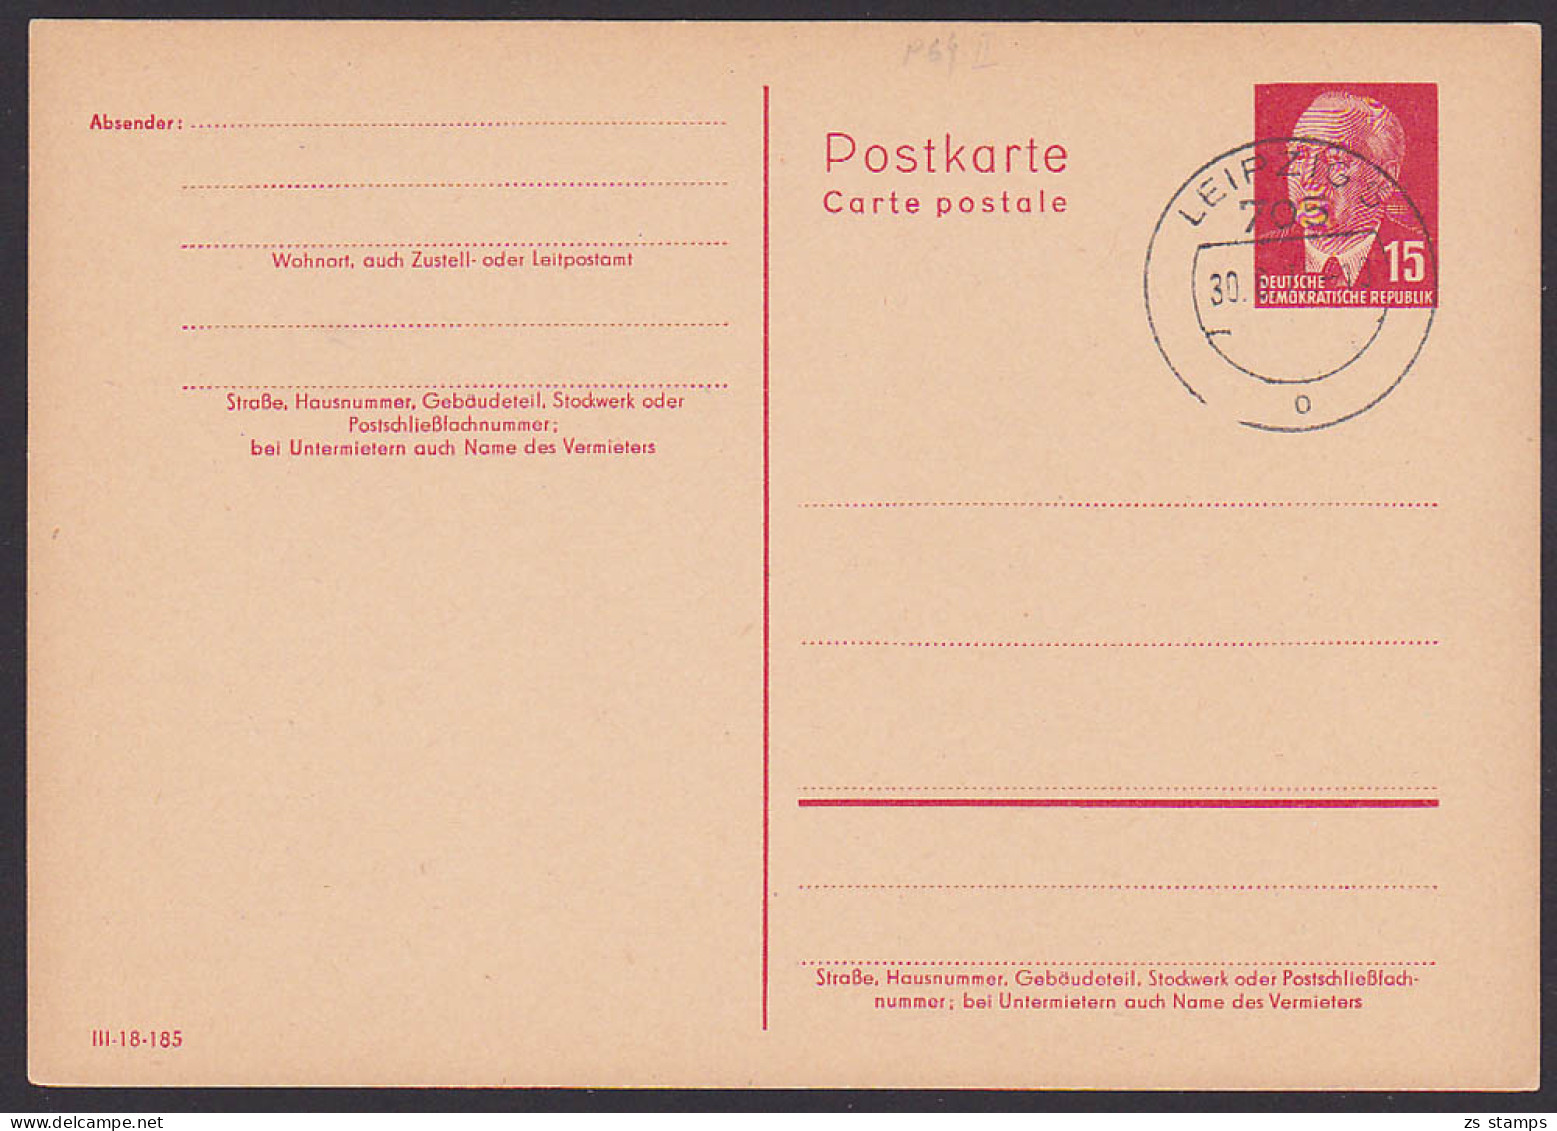 Wilhelm Pieck OSt. LEIPZIG 5 DDR P64II 15 Pf. - Postkarten - Gebraucht